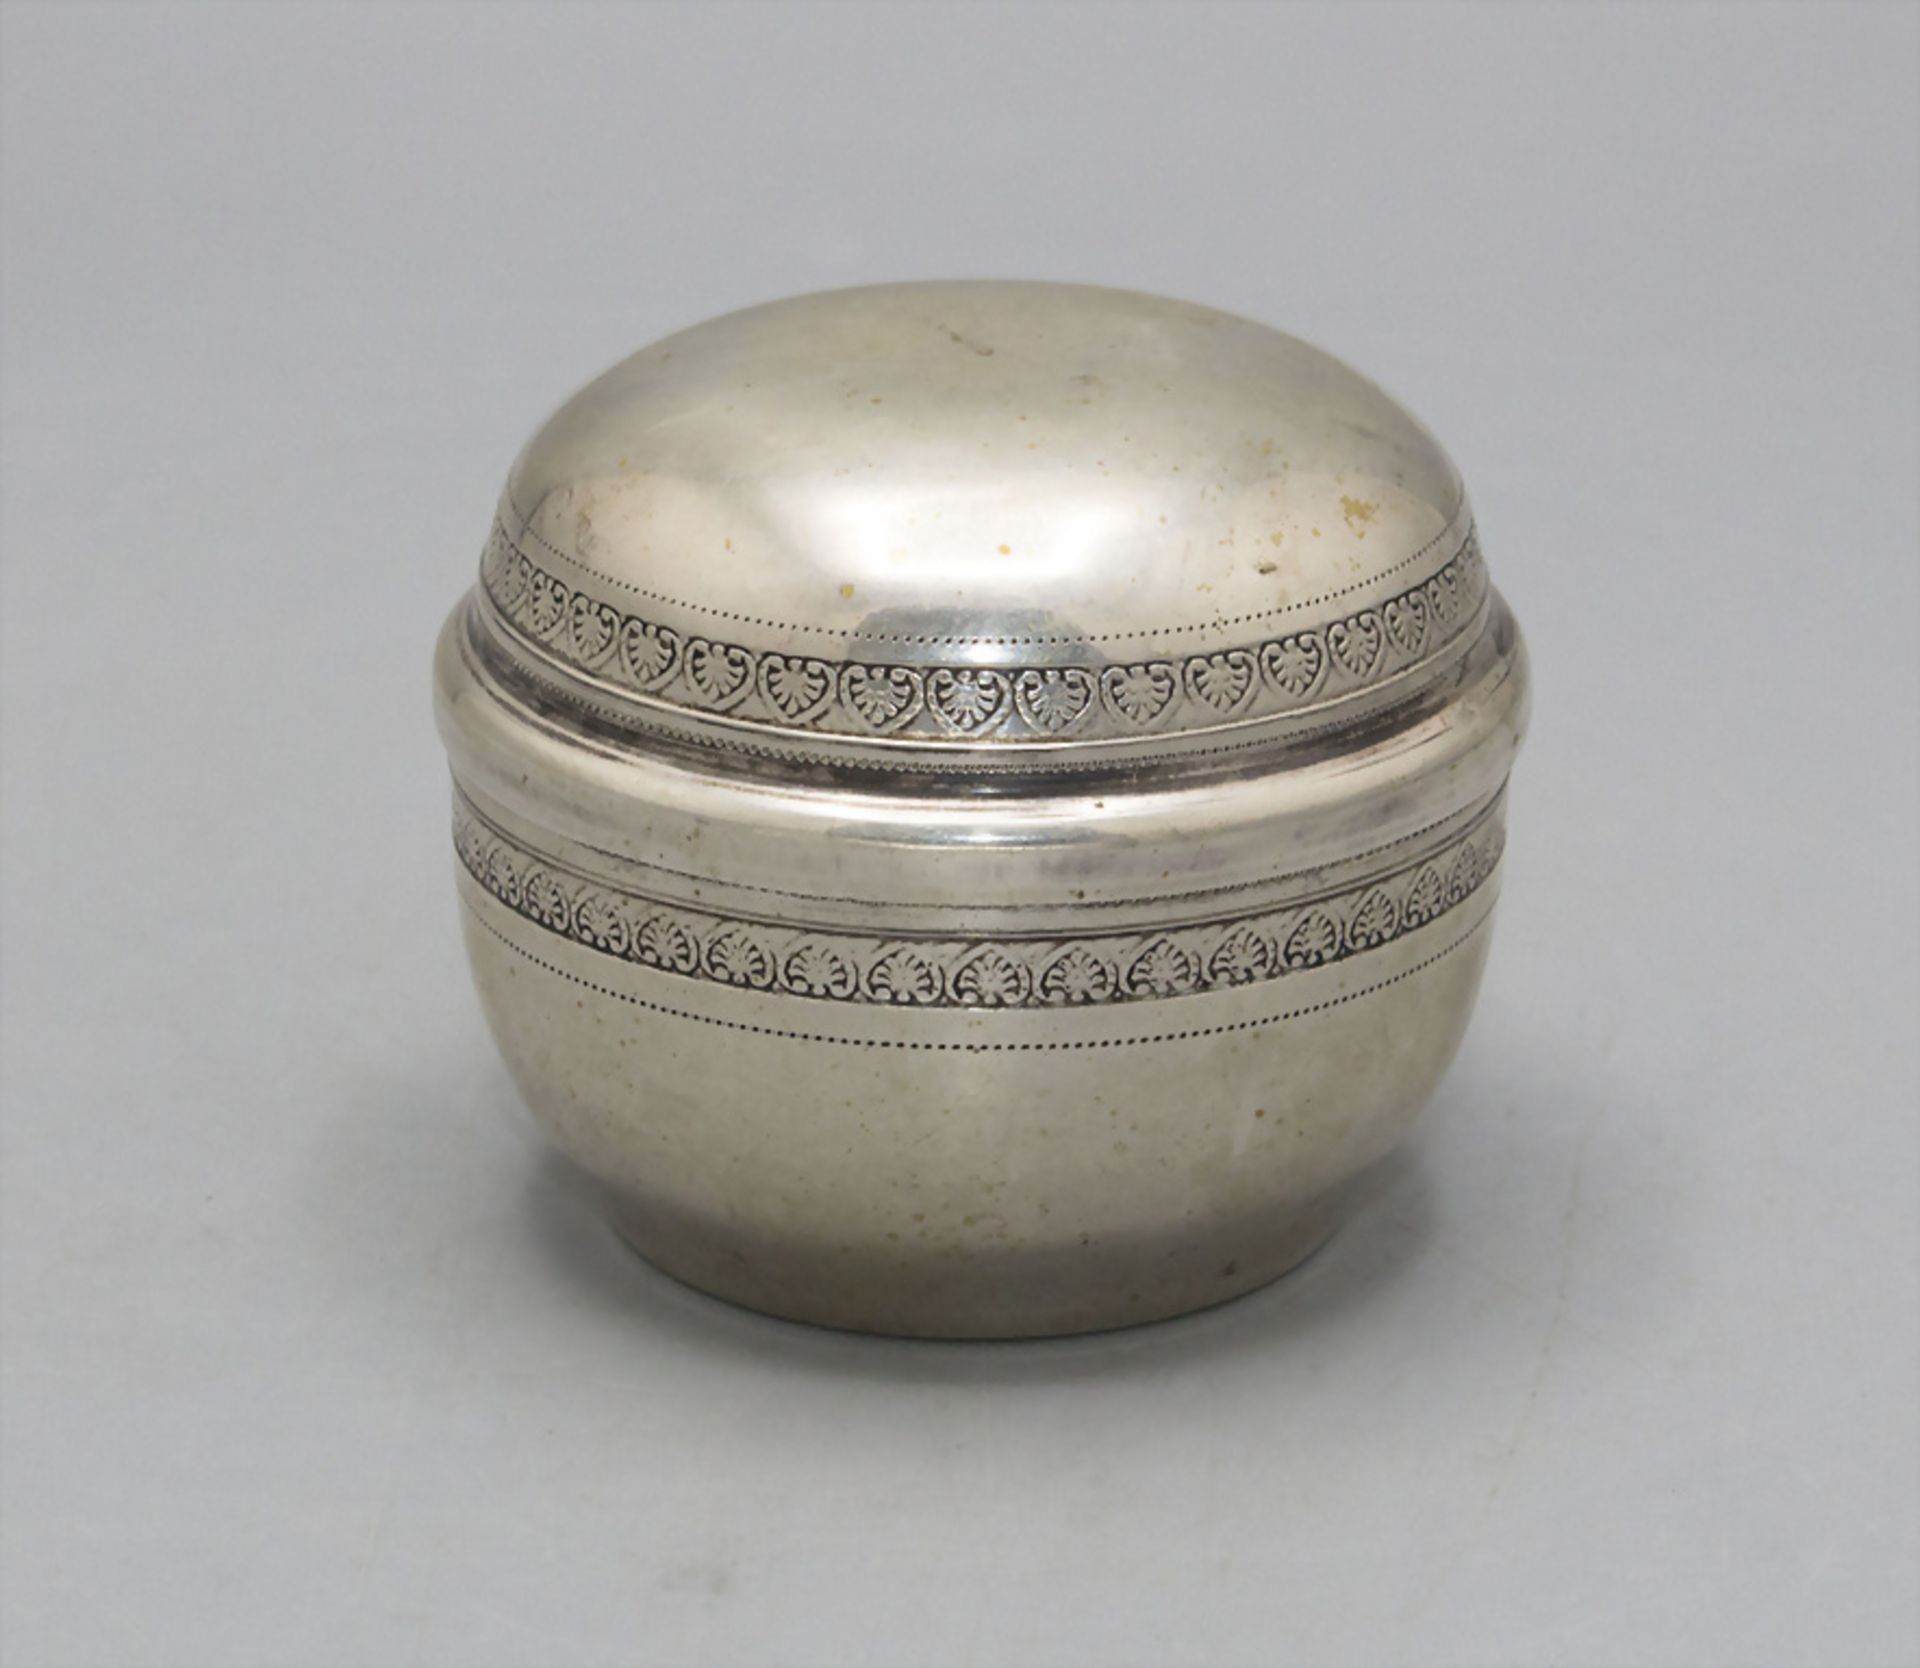 Kugelförmige Silberdose / A spherical silver box, Ende 19. Jh.